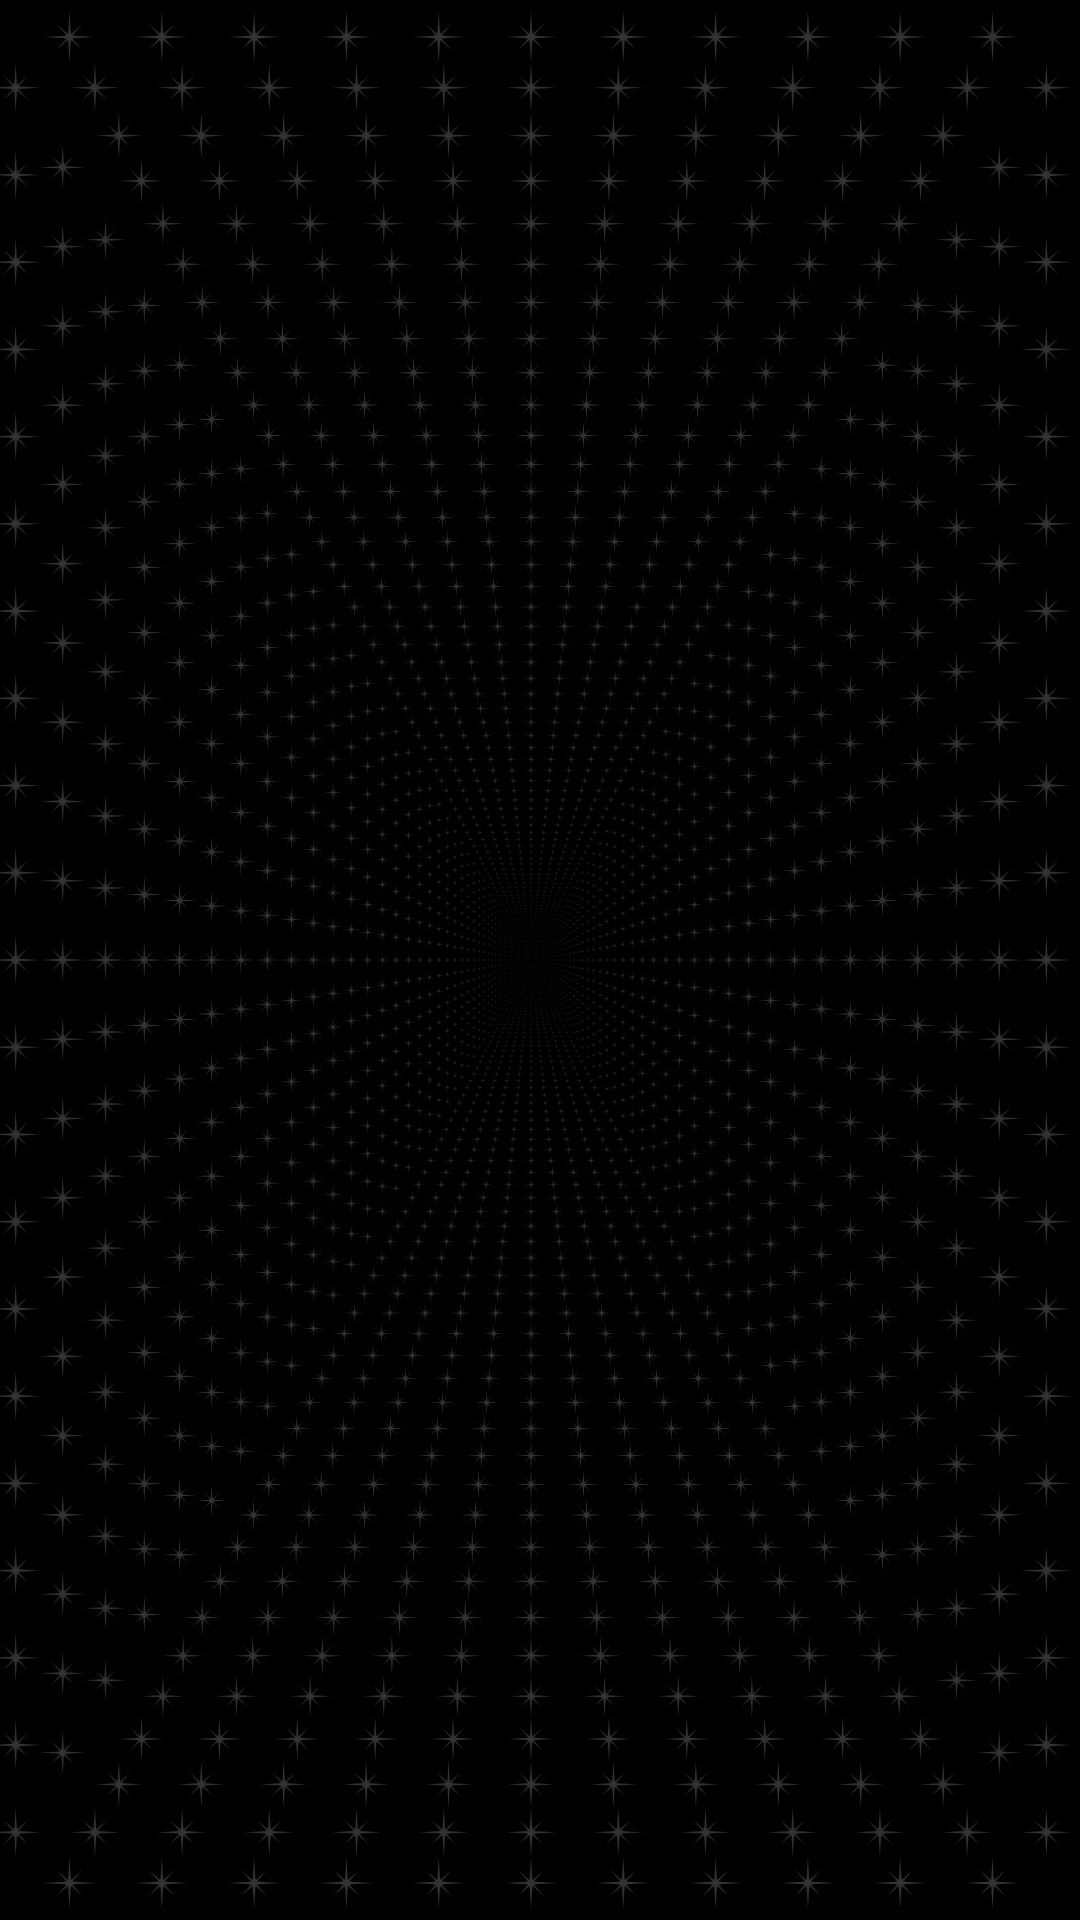 Hình nền đen chấm sáng 1080x1920 mang lại vẻ đẹp độc đáo và cá tính cho thiết bị của bạn. Sự kết hợp giữa đen và ánh sáng khiến hình ảnh trở nên sống động và rực rỡ, tạo nên một không gian nghệ thuật trên màn hình điện thoại của bạn.